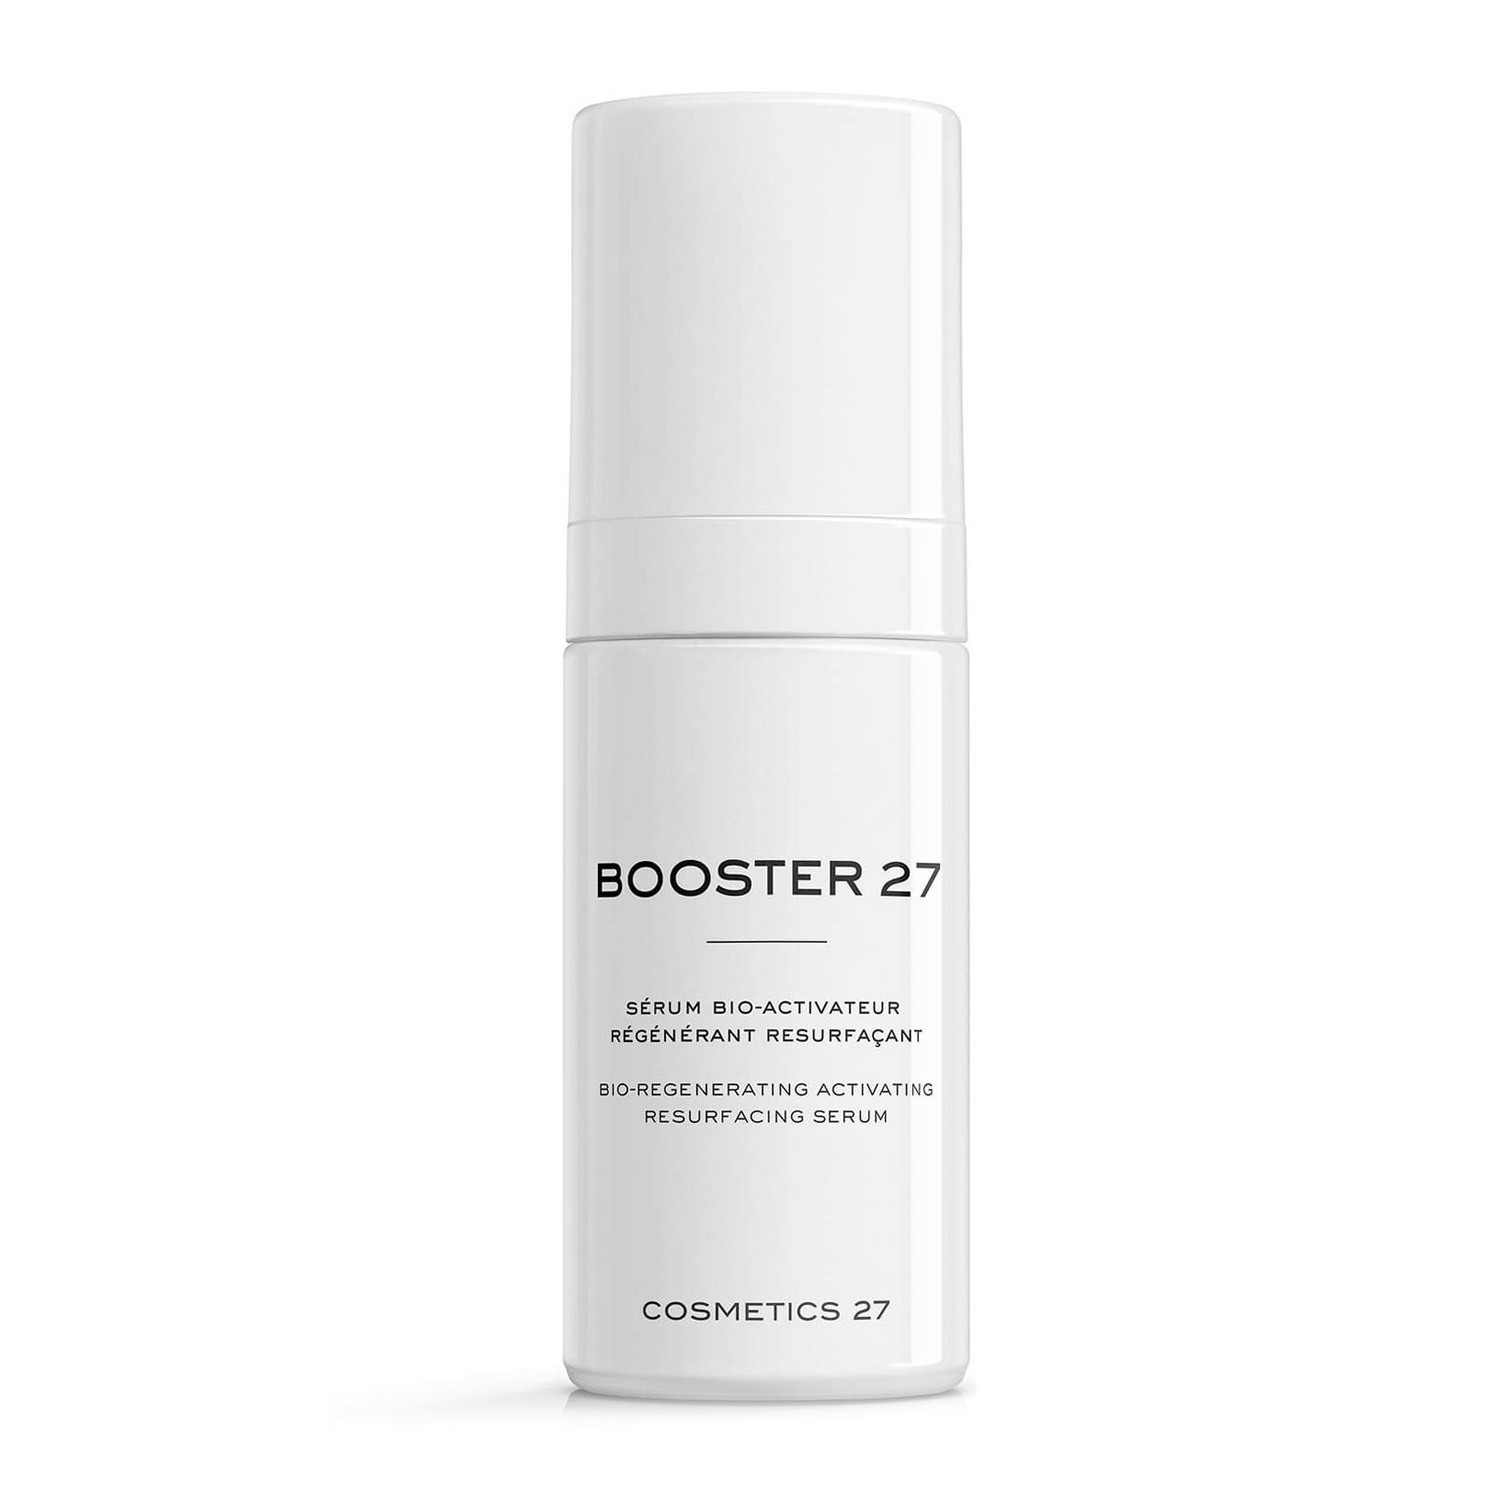 Cosmetics 27 Восстанавливающая биосыворотка для регенерации и обновления